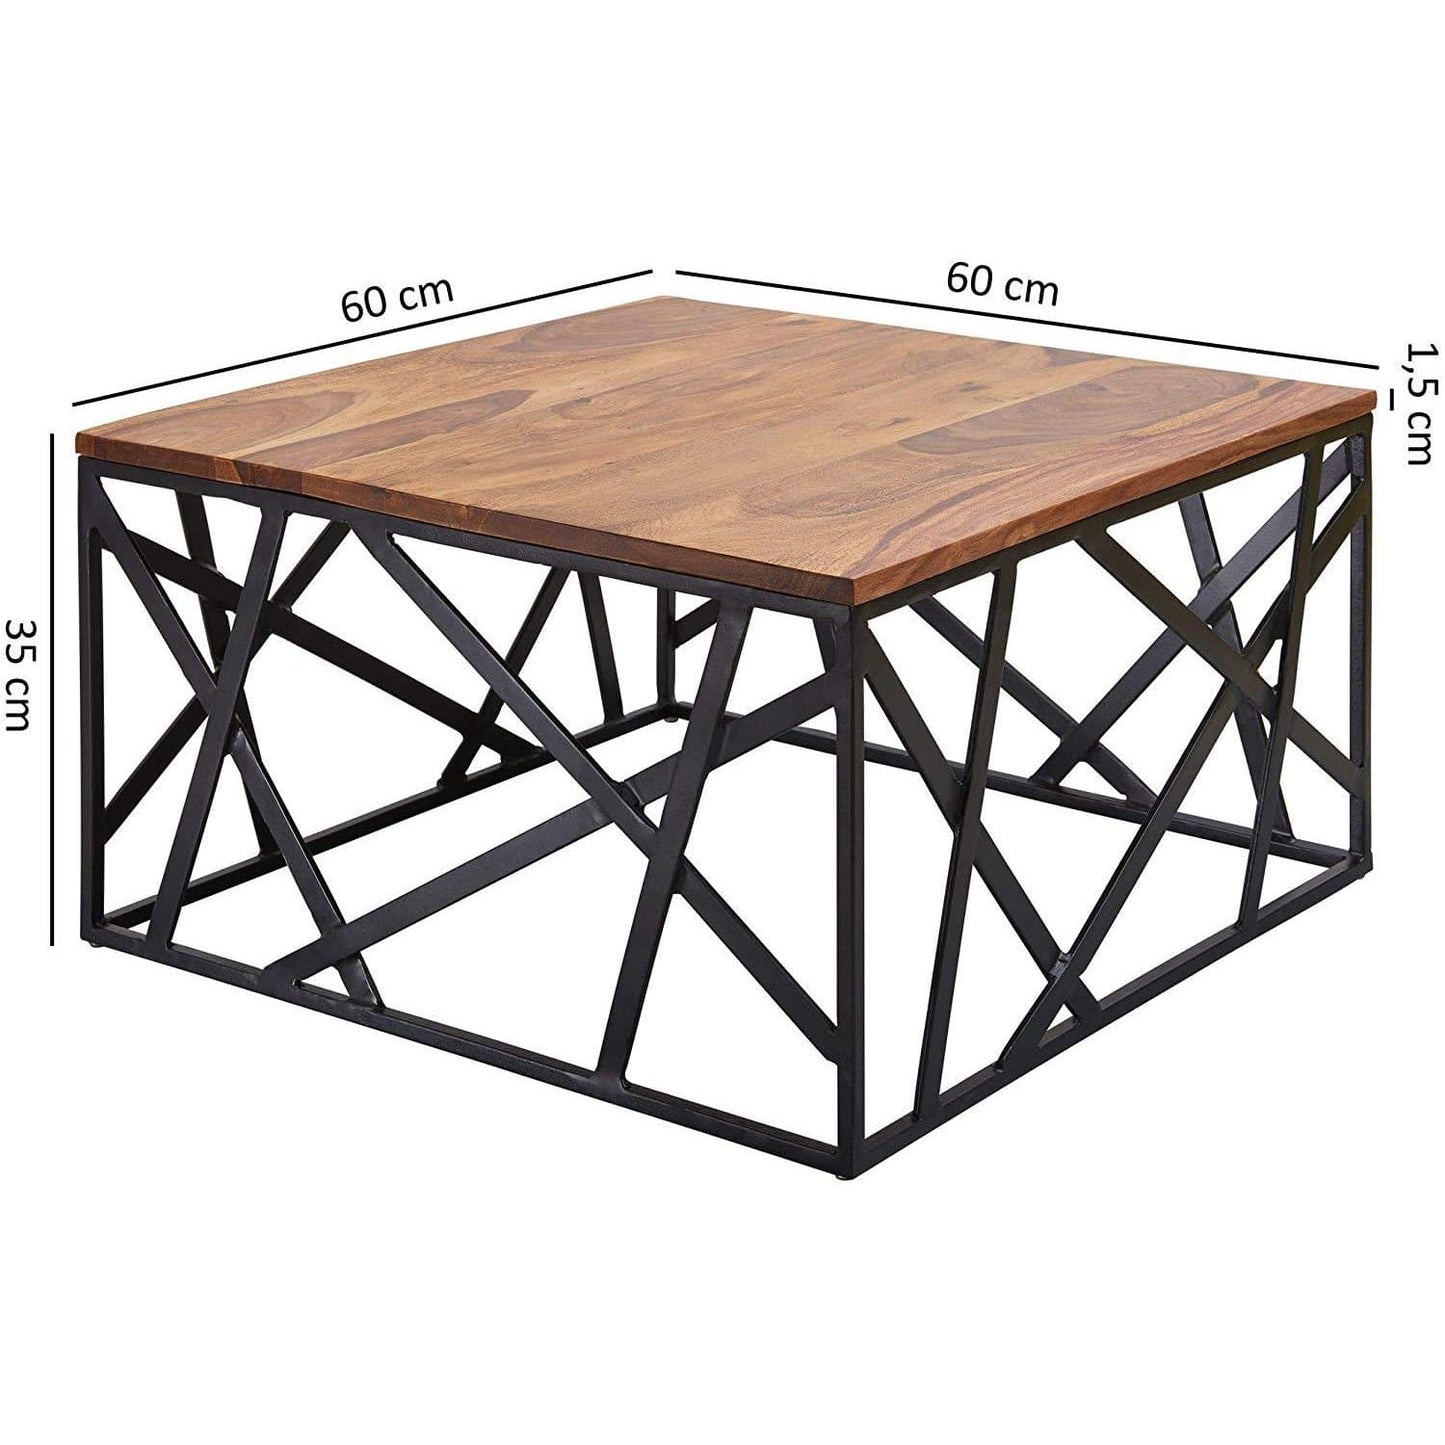 Table basse industrielle de Nancy - Structure en métal - Table de salon - Bois de Sheesham - 60 x 35 x 60 cm